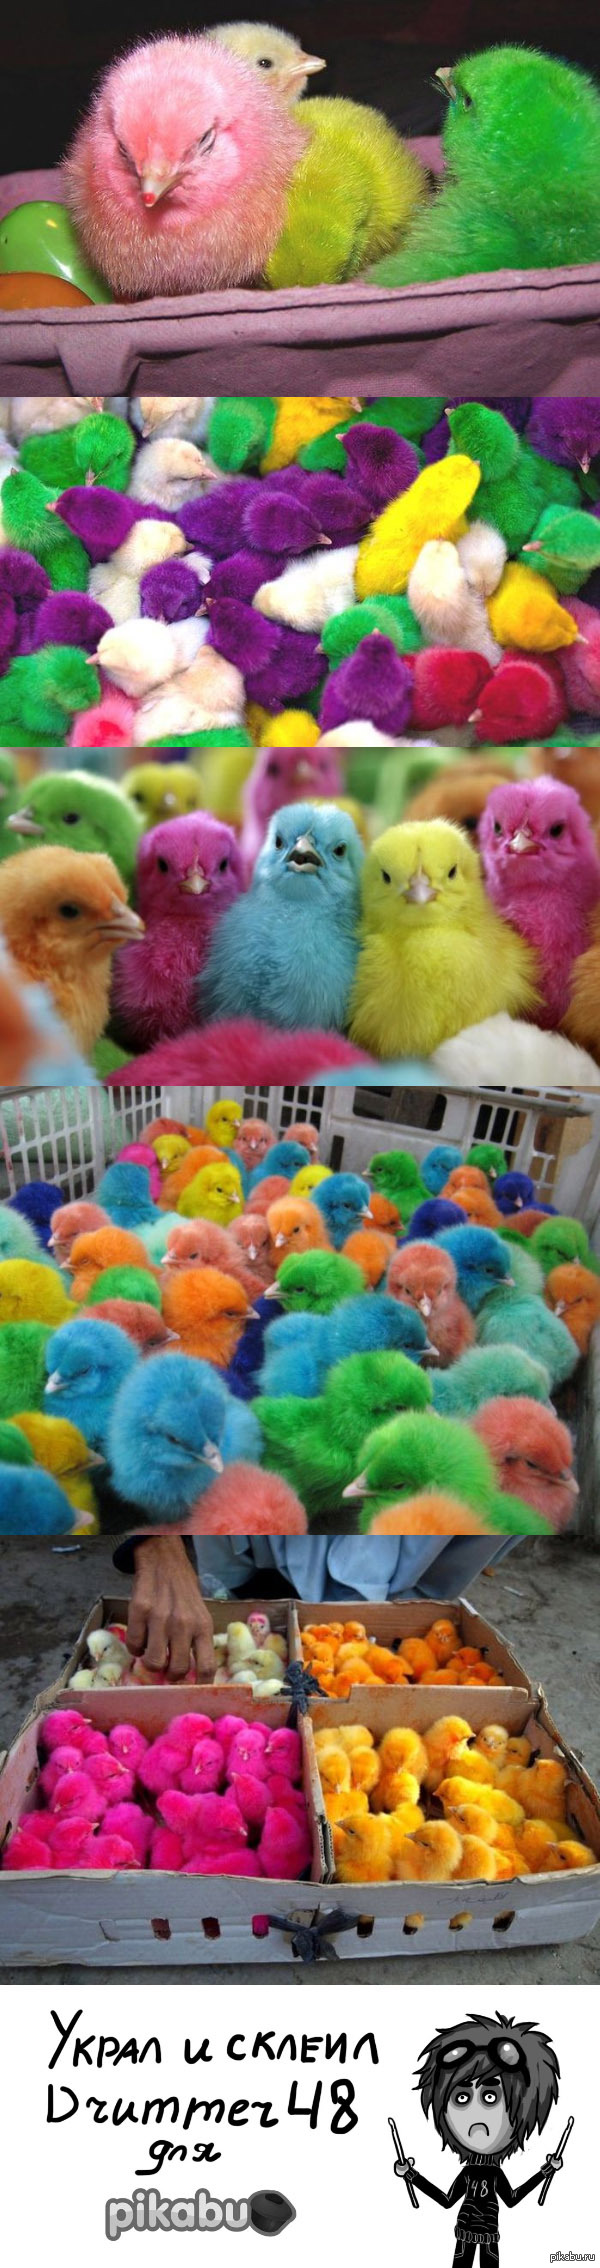 Цветные живые цыплята